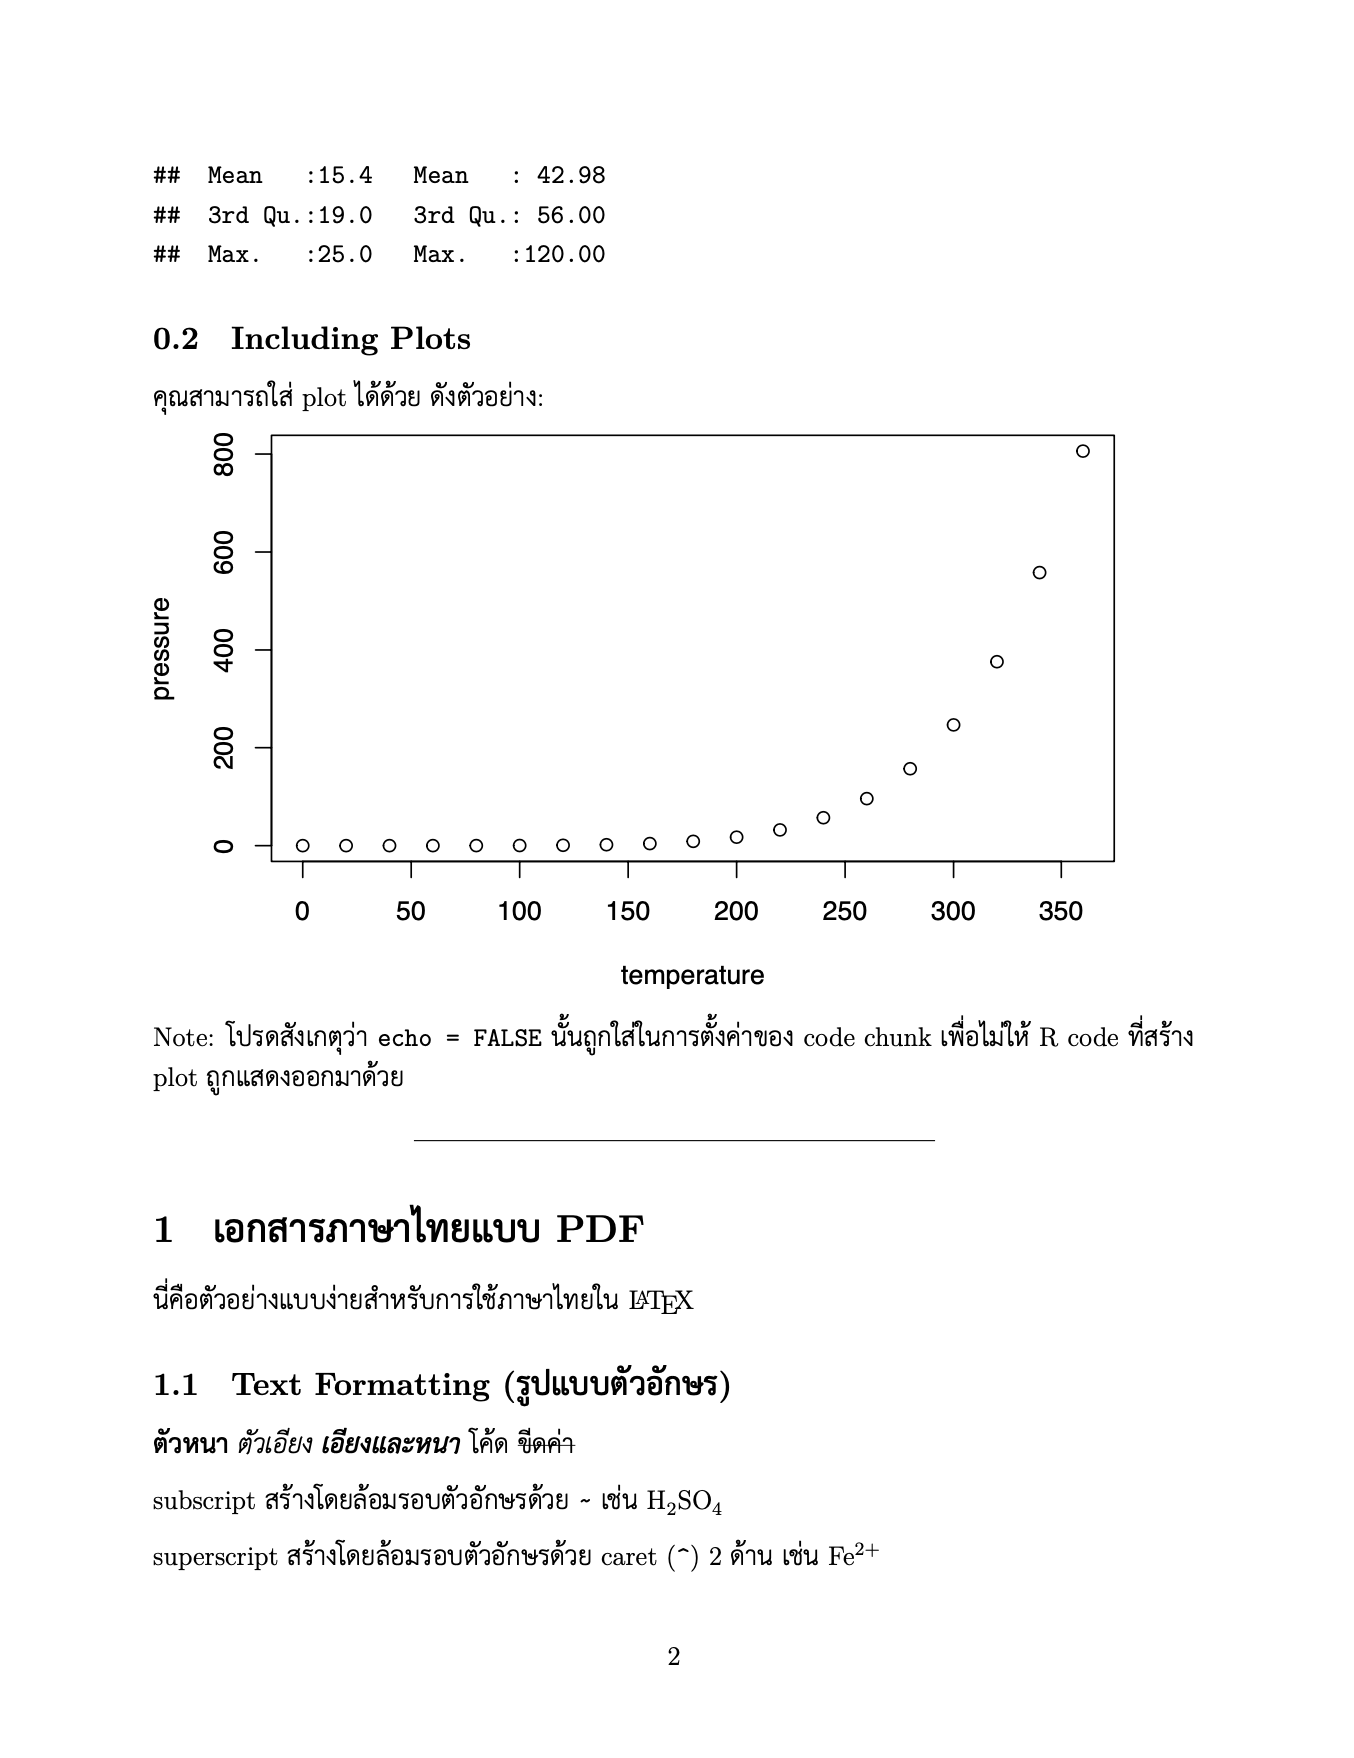 Thai book example 2